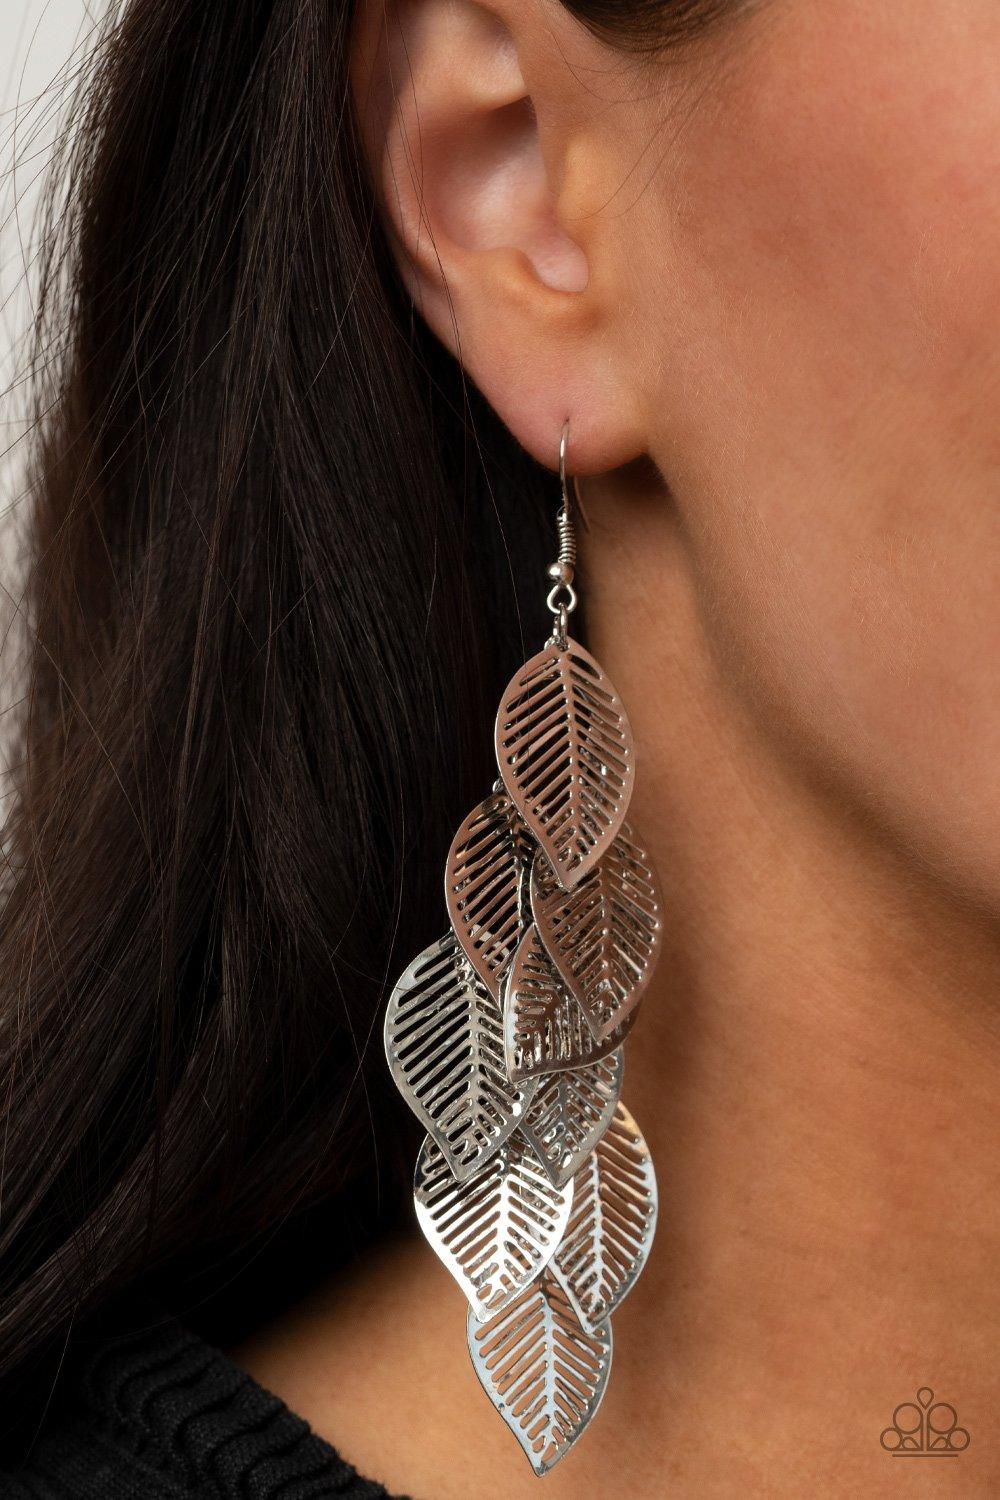 Limitlessly Leafy Silver Earrings - Jewelry by Bretta